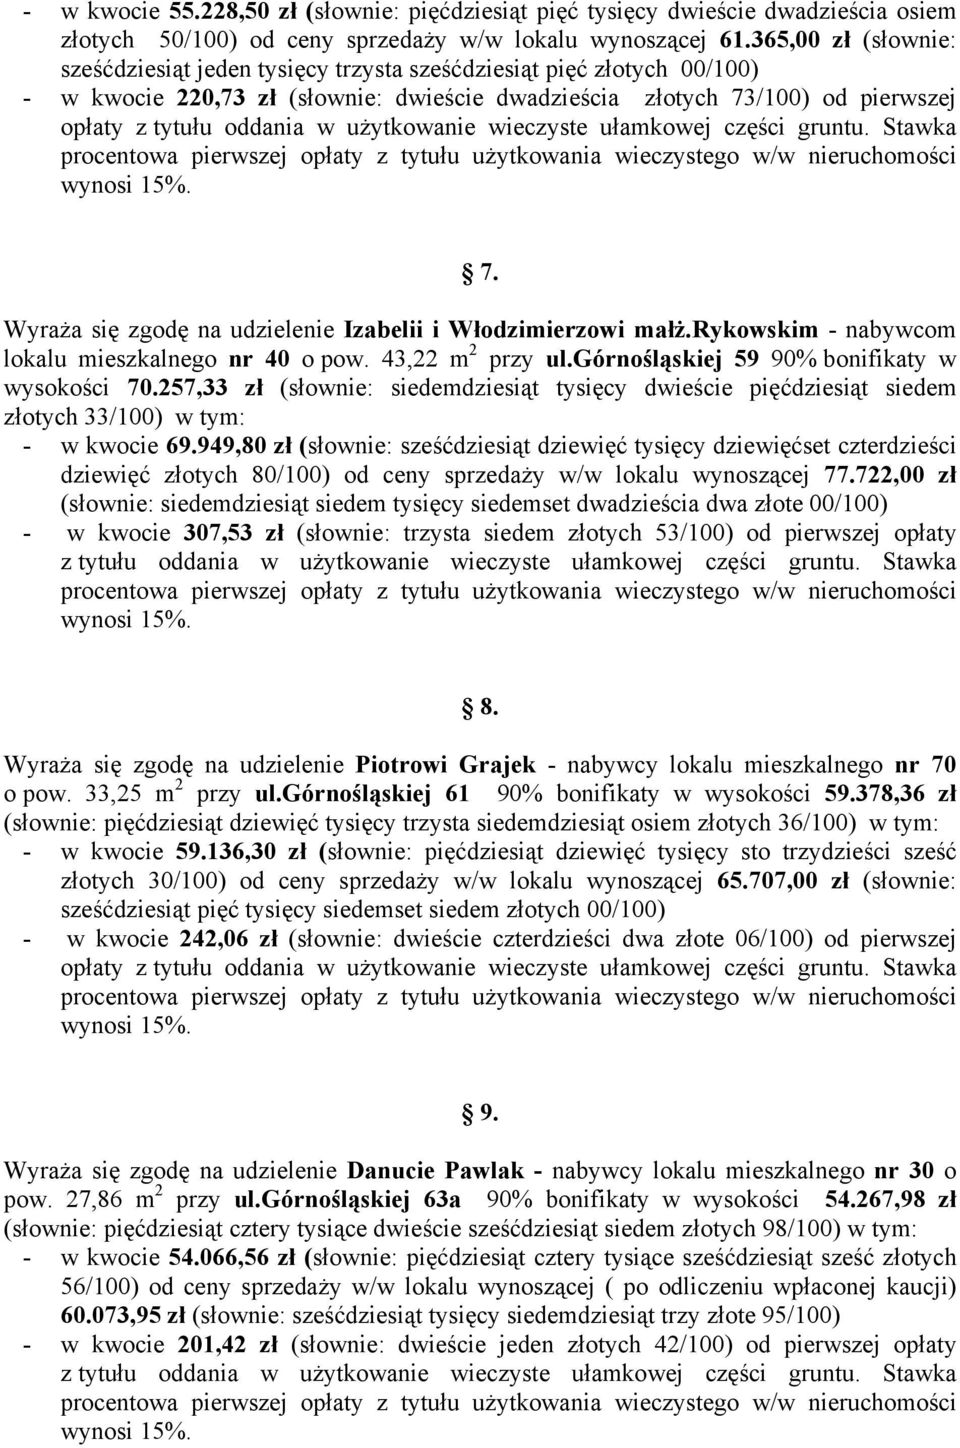 Wyraża się zgodę na udzielenie Izabelii i Włodzimierzowi małż.rykowskim - nabywcom lokalu mieszkalnego nr 40 o pow. 43,22 m 2 przy ul.górnośląskiej 59 90% bonifikaty w wysokości 70.